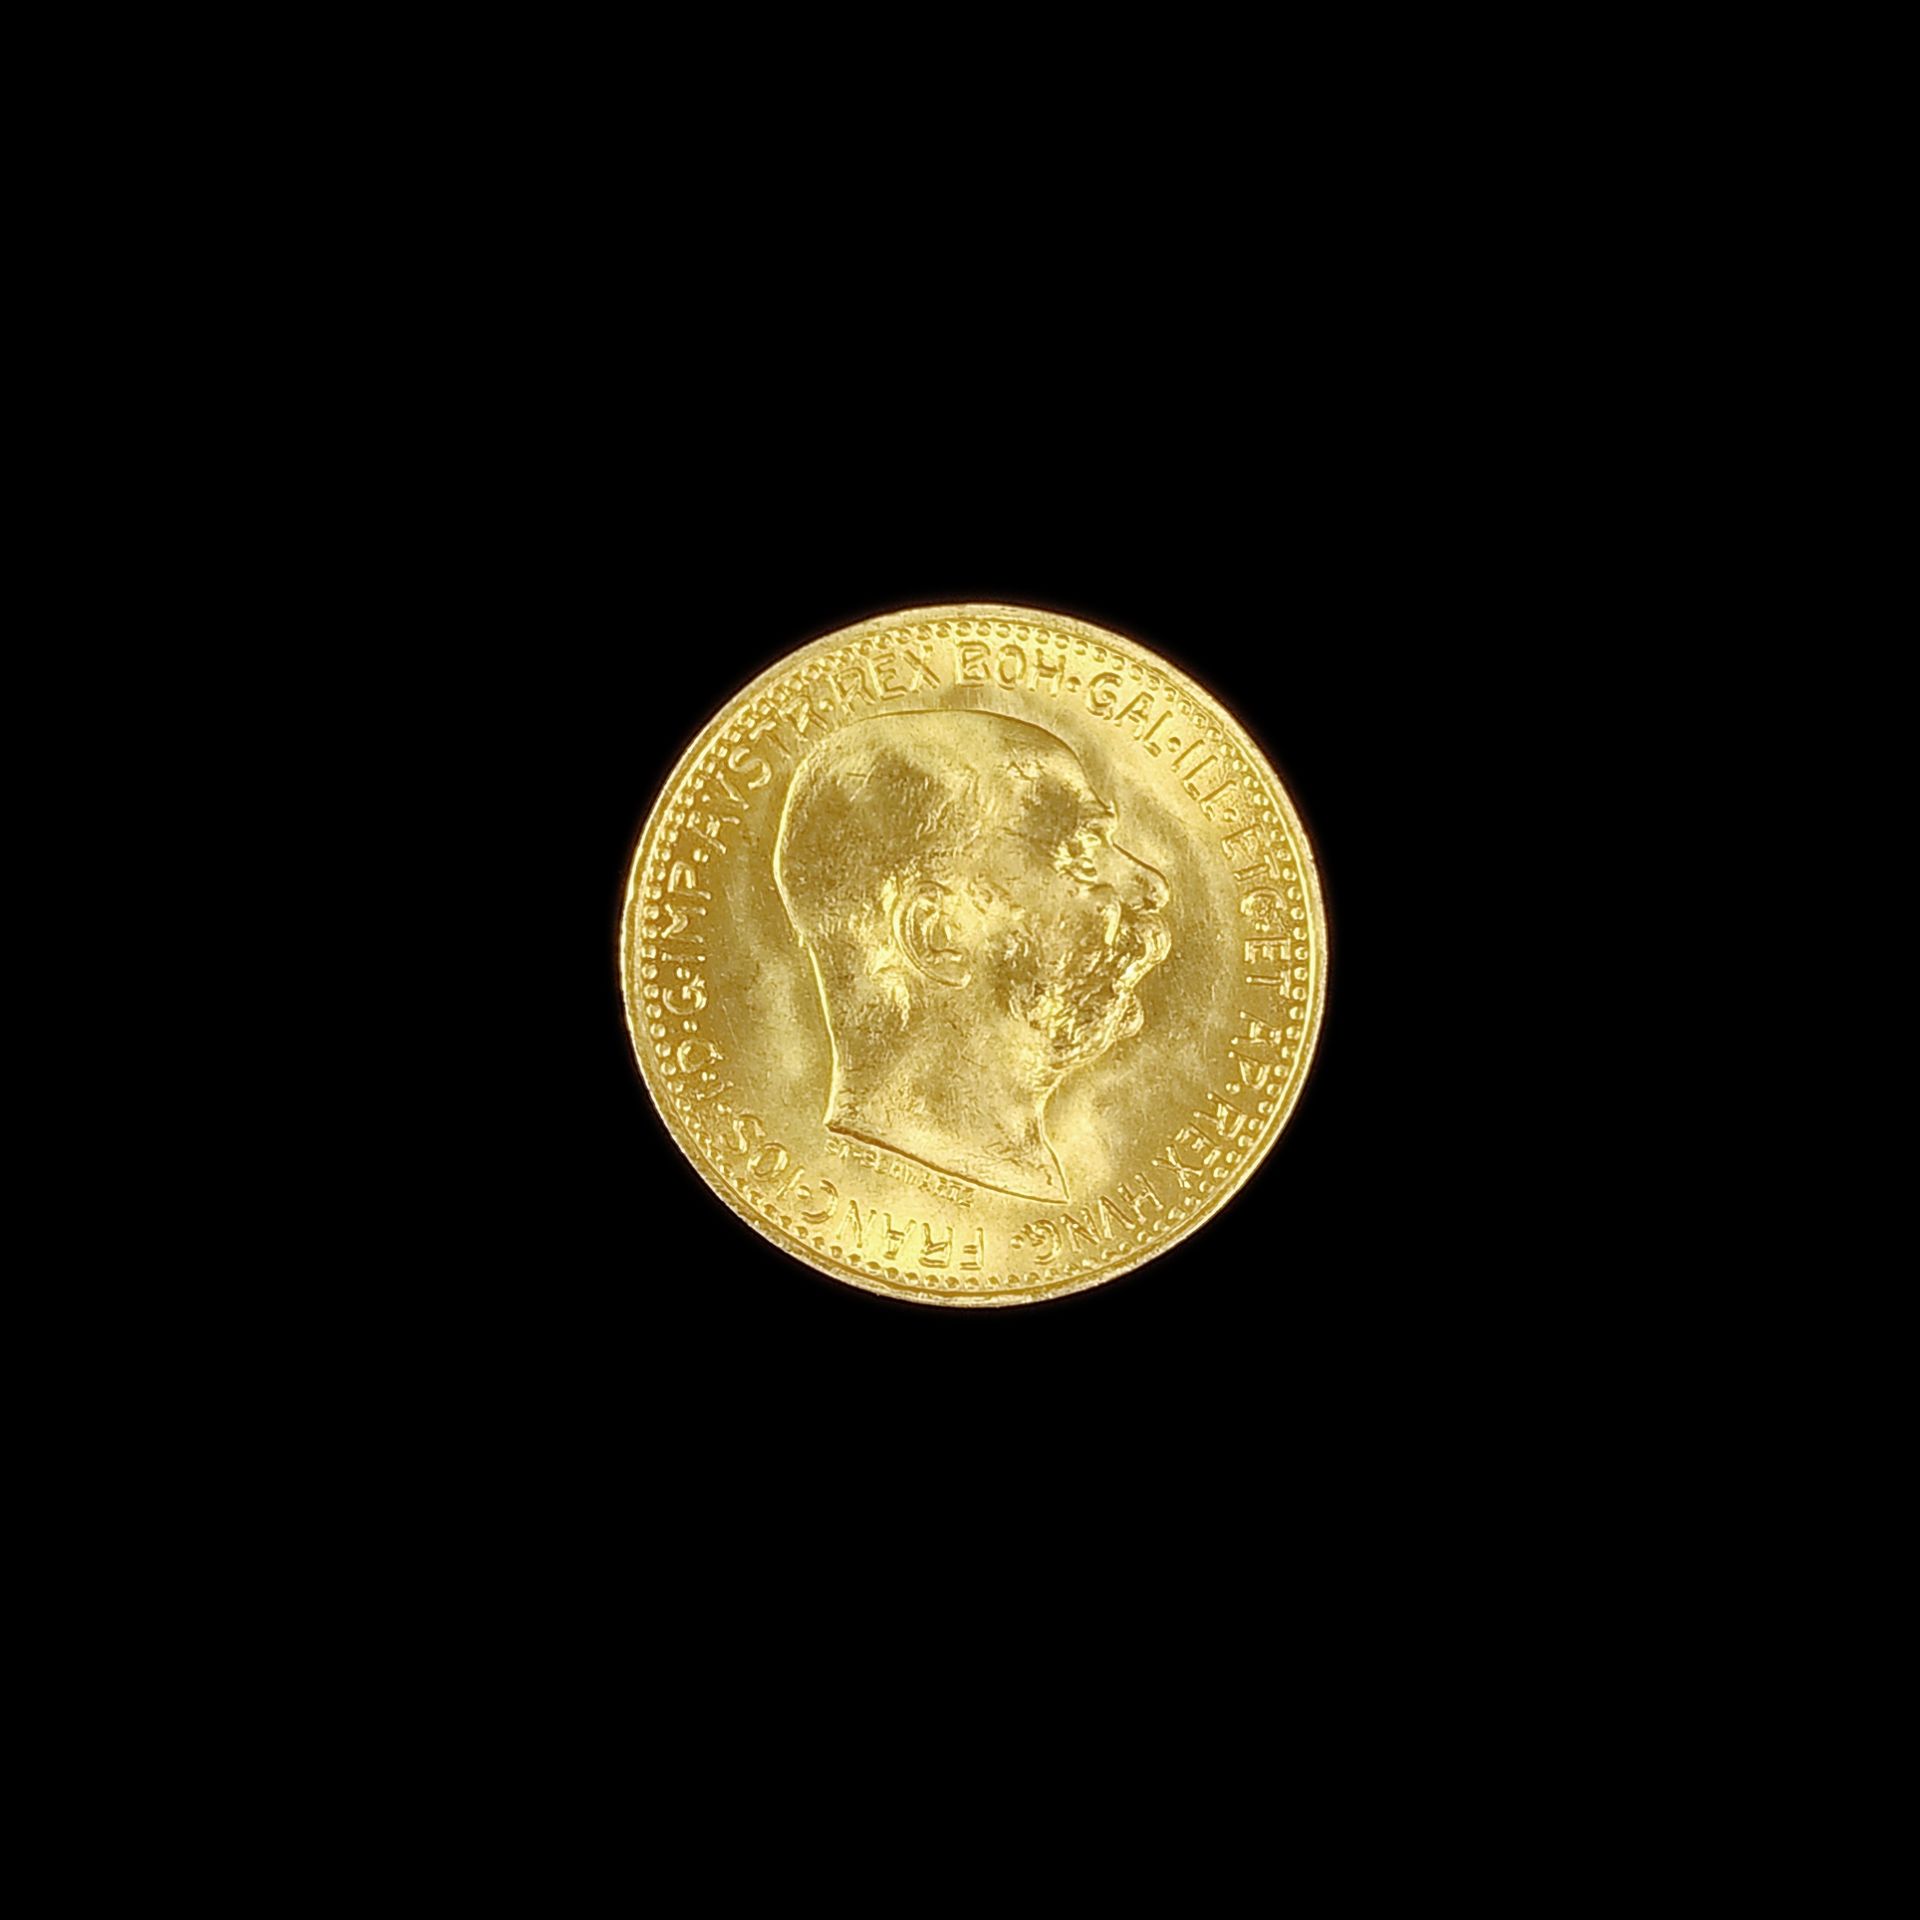 Goldmünze, 10 Kronen, Franz Joseph I., Österreich-Ungarn 1912, 900 Gelbgold, 3,38g, Durchmesser 18,